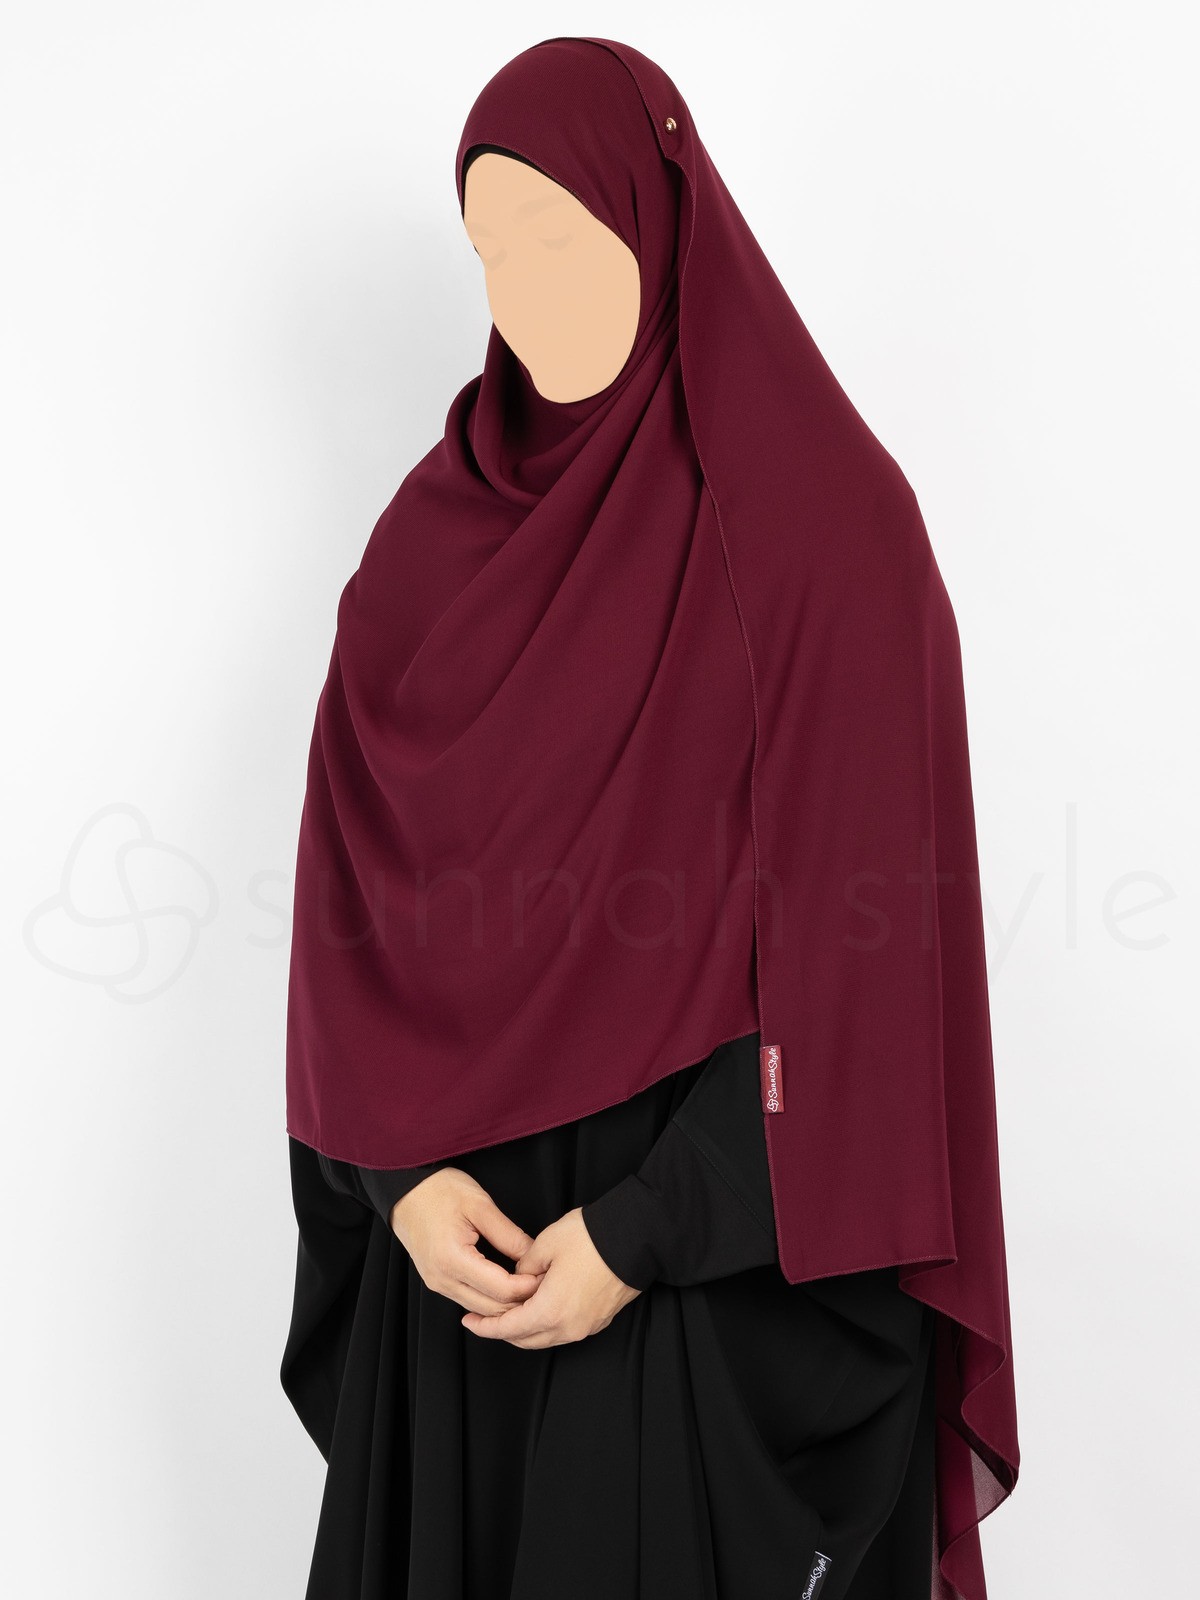 Sunnah Style - Essentials Shayla (Premium Chiffon) - XL (Burgundy)